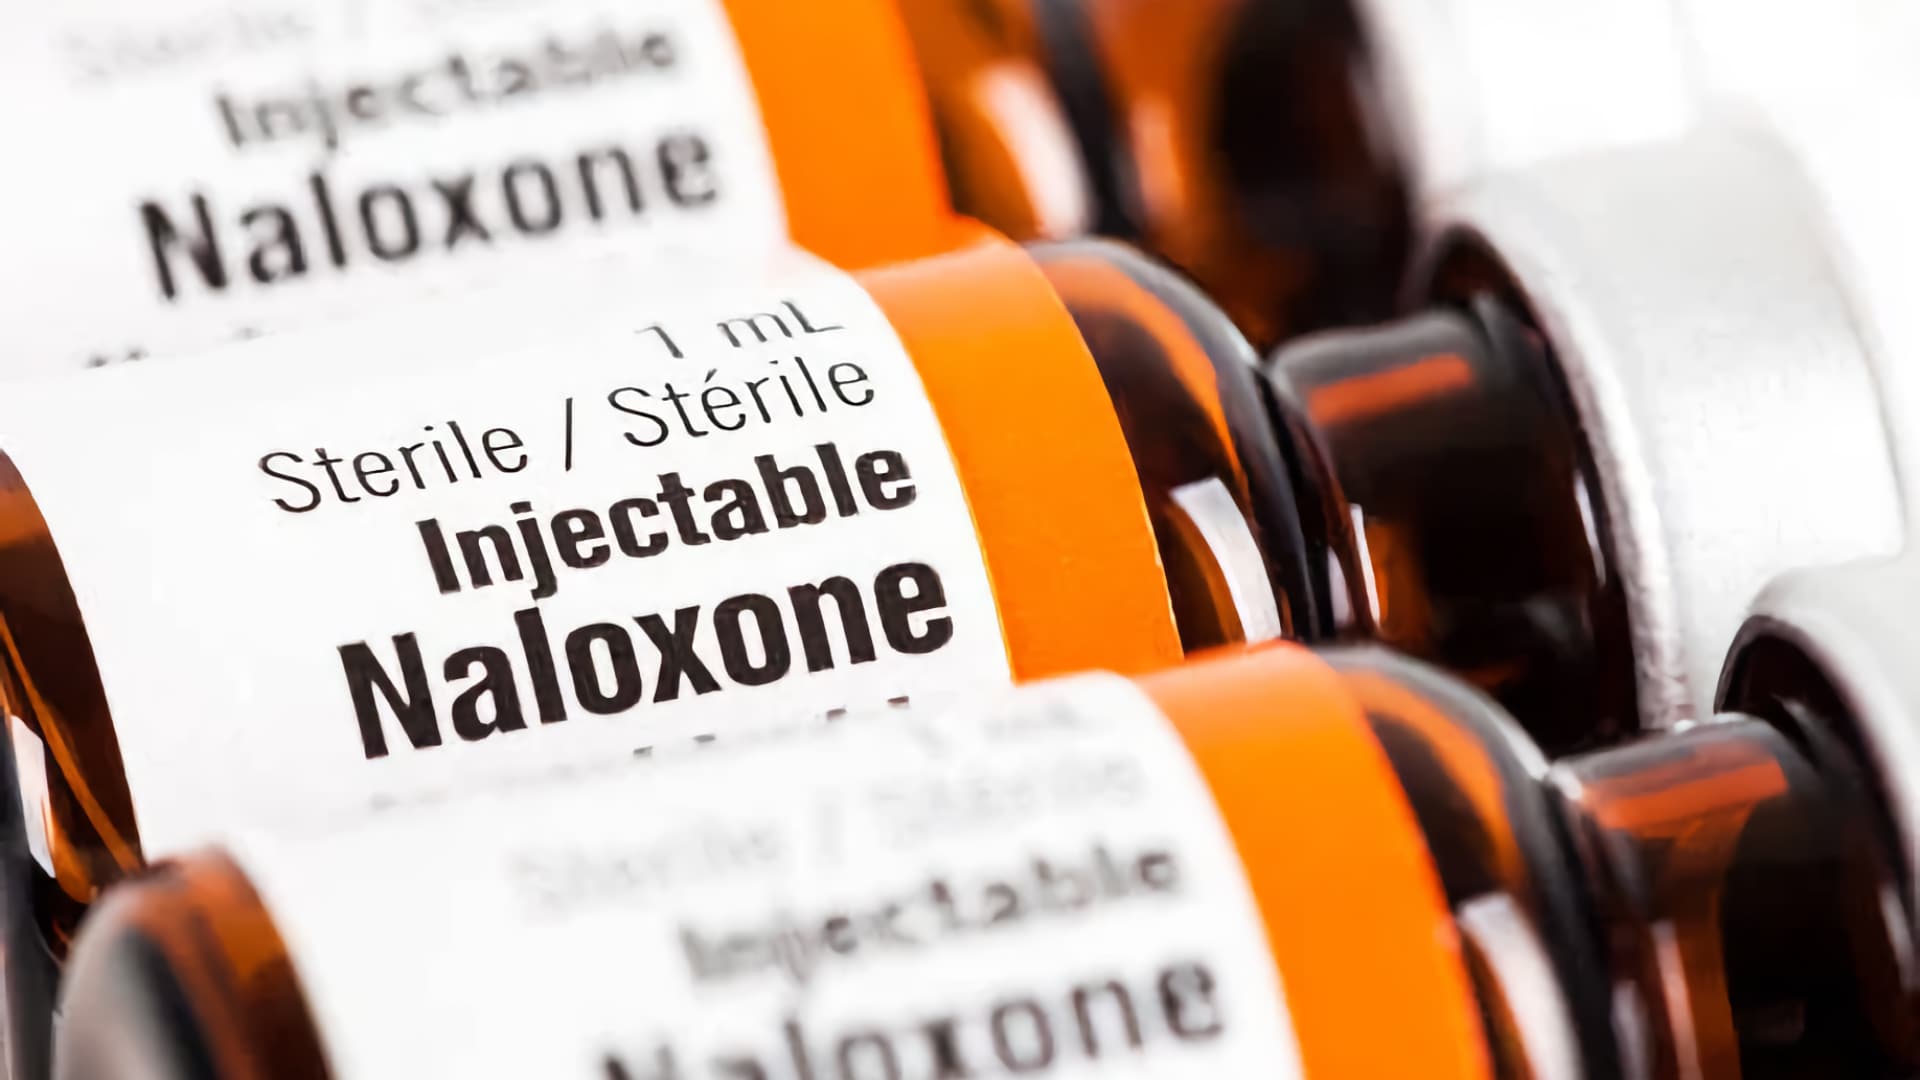 Avanza reforma para facilitar acceso a naloxona como tratamiento contra sobredosis de opioides